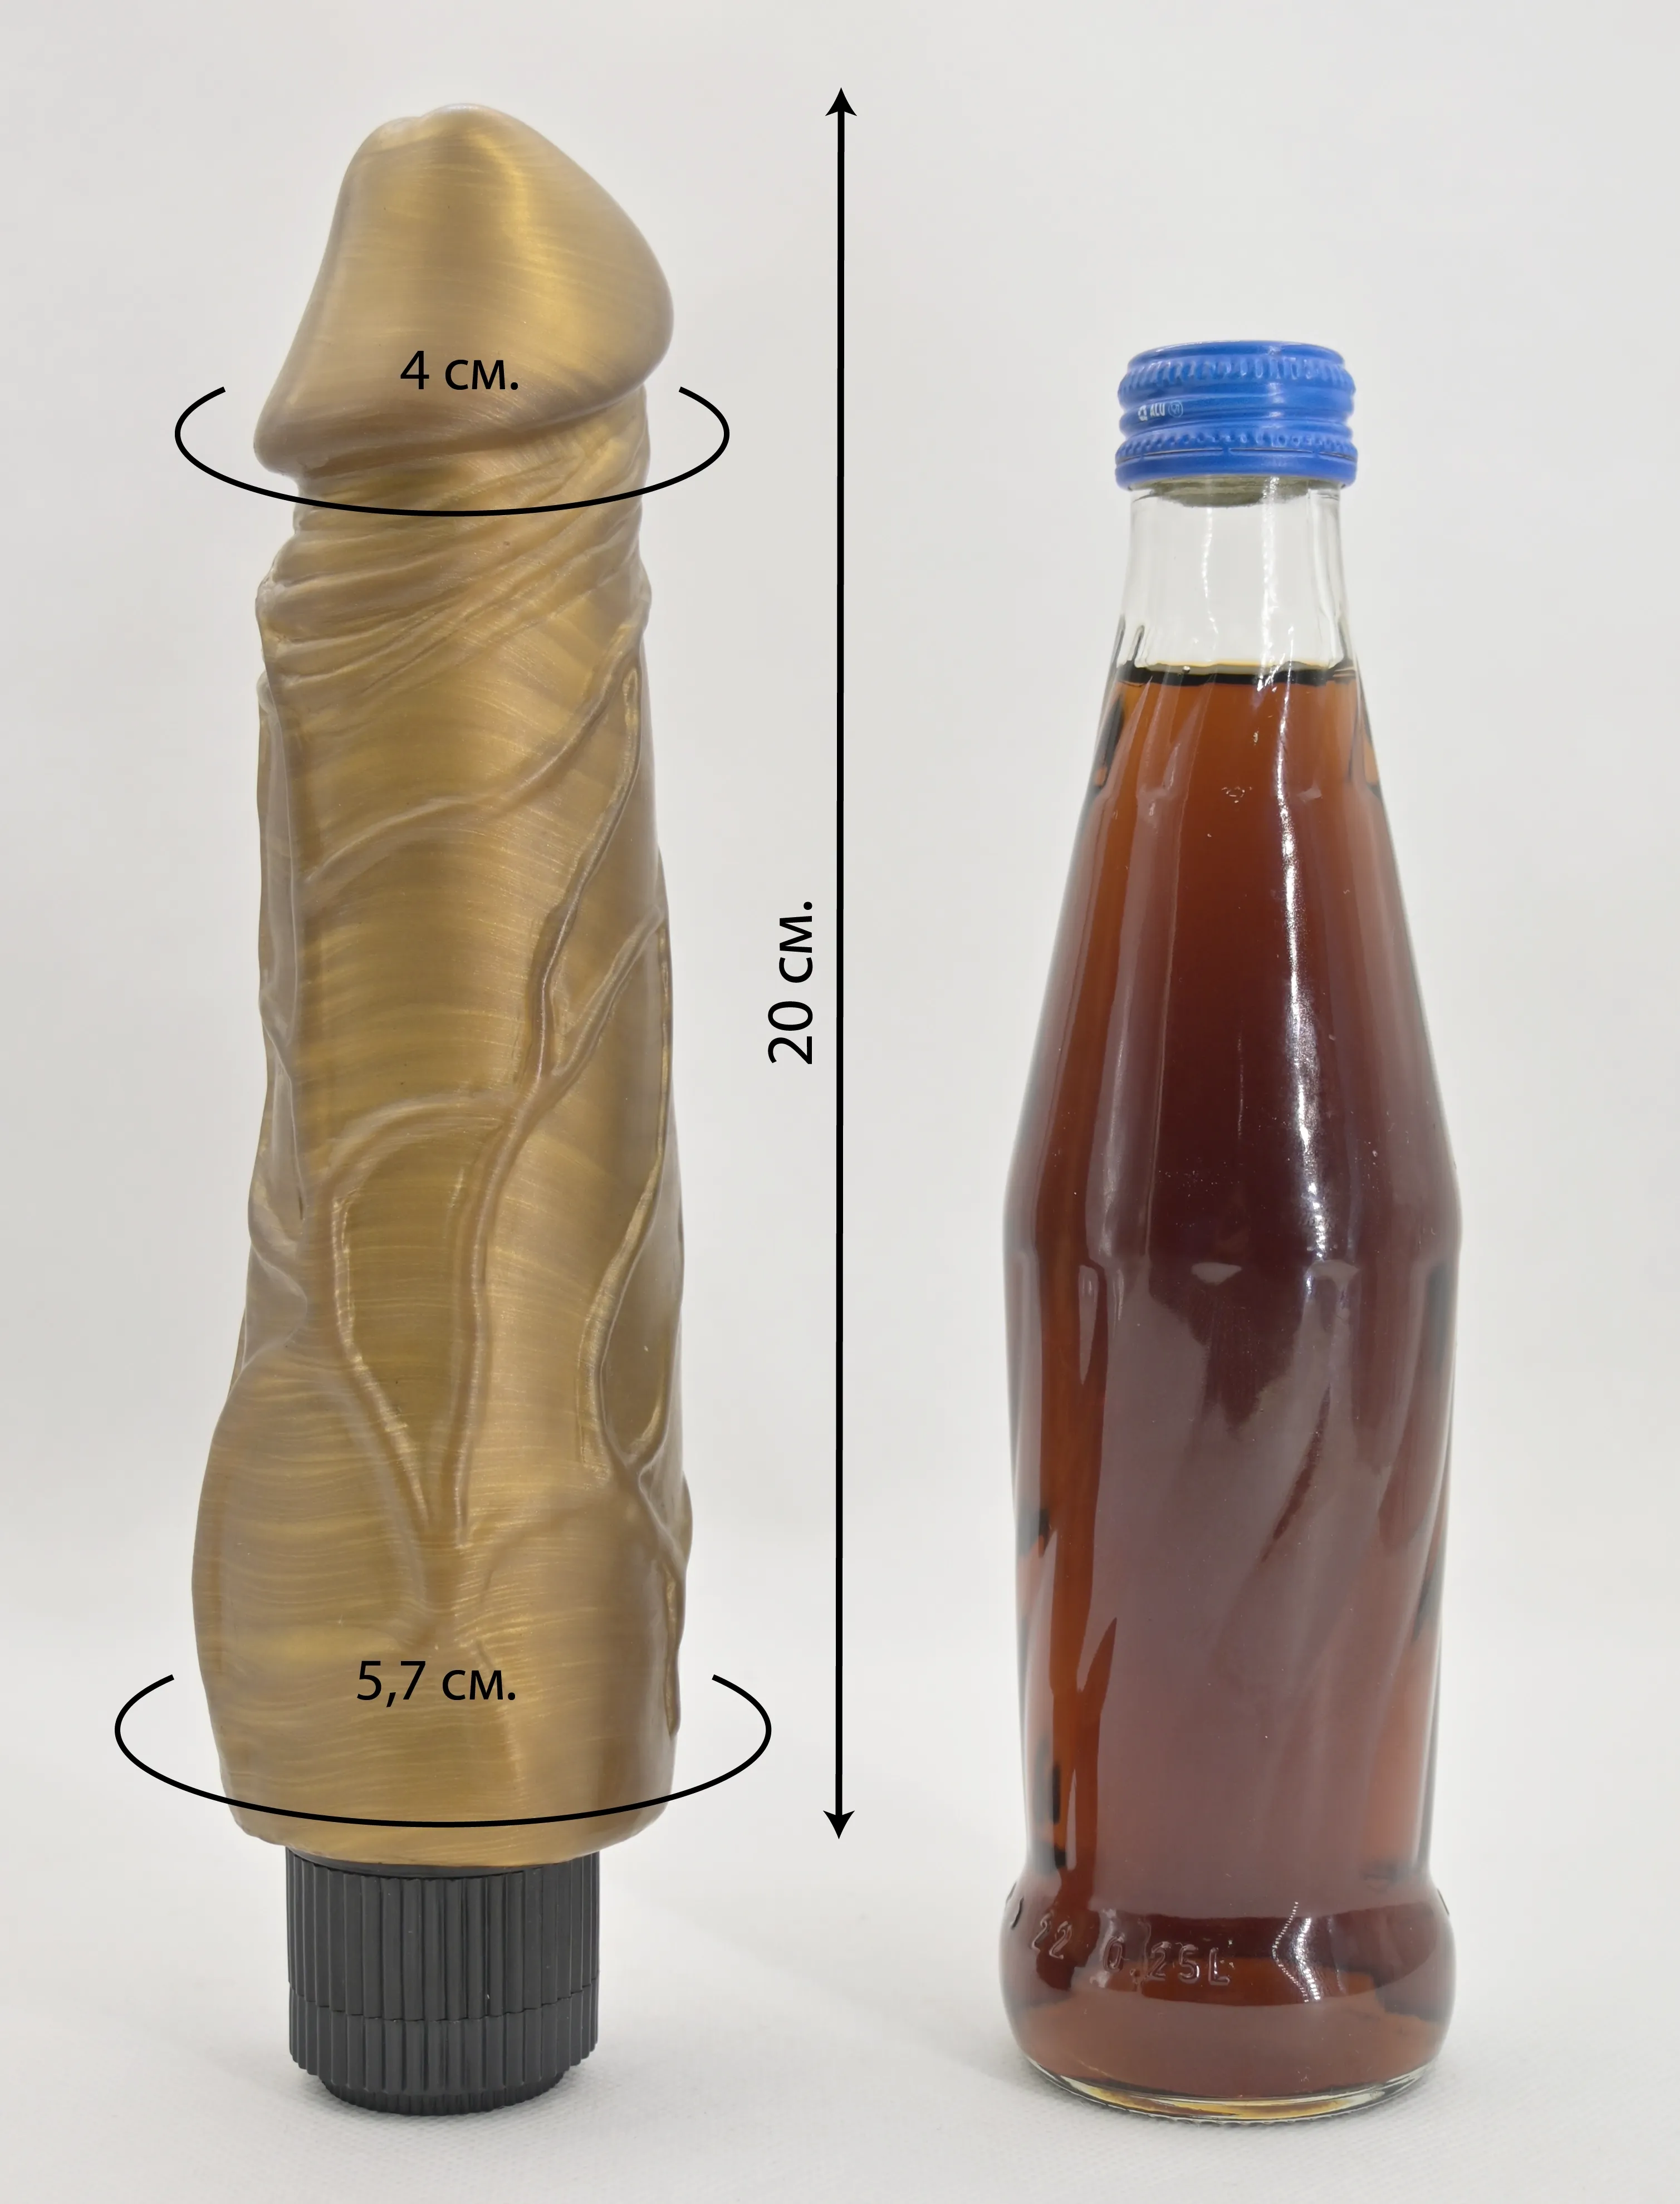 Размеры и сравнение янтарного вибратора Pat McCock с бутылкой 0,33 л.